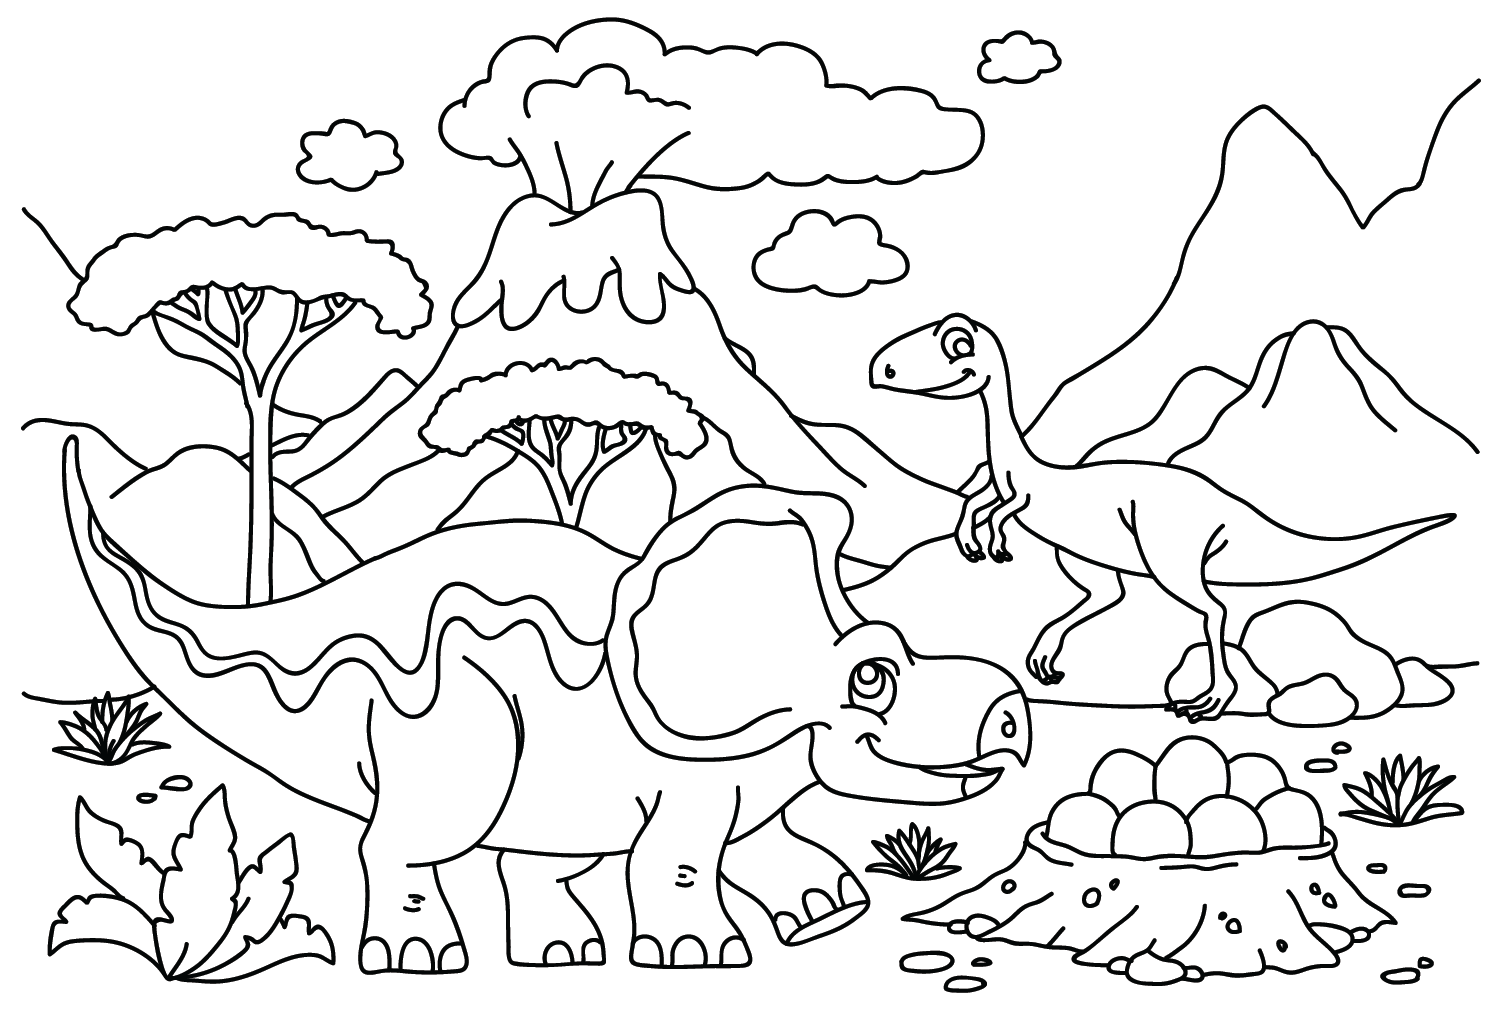 Kostenlose druckbare Protoceratops-Malvorlage von Protoceratops